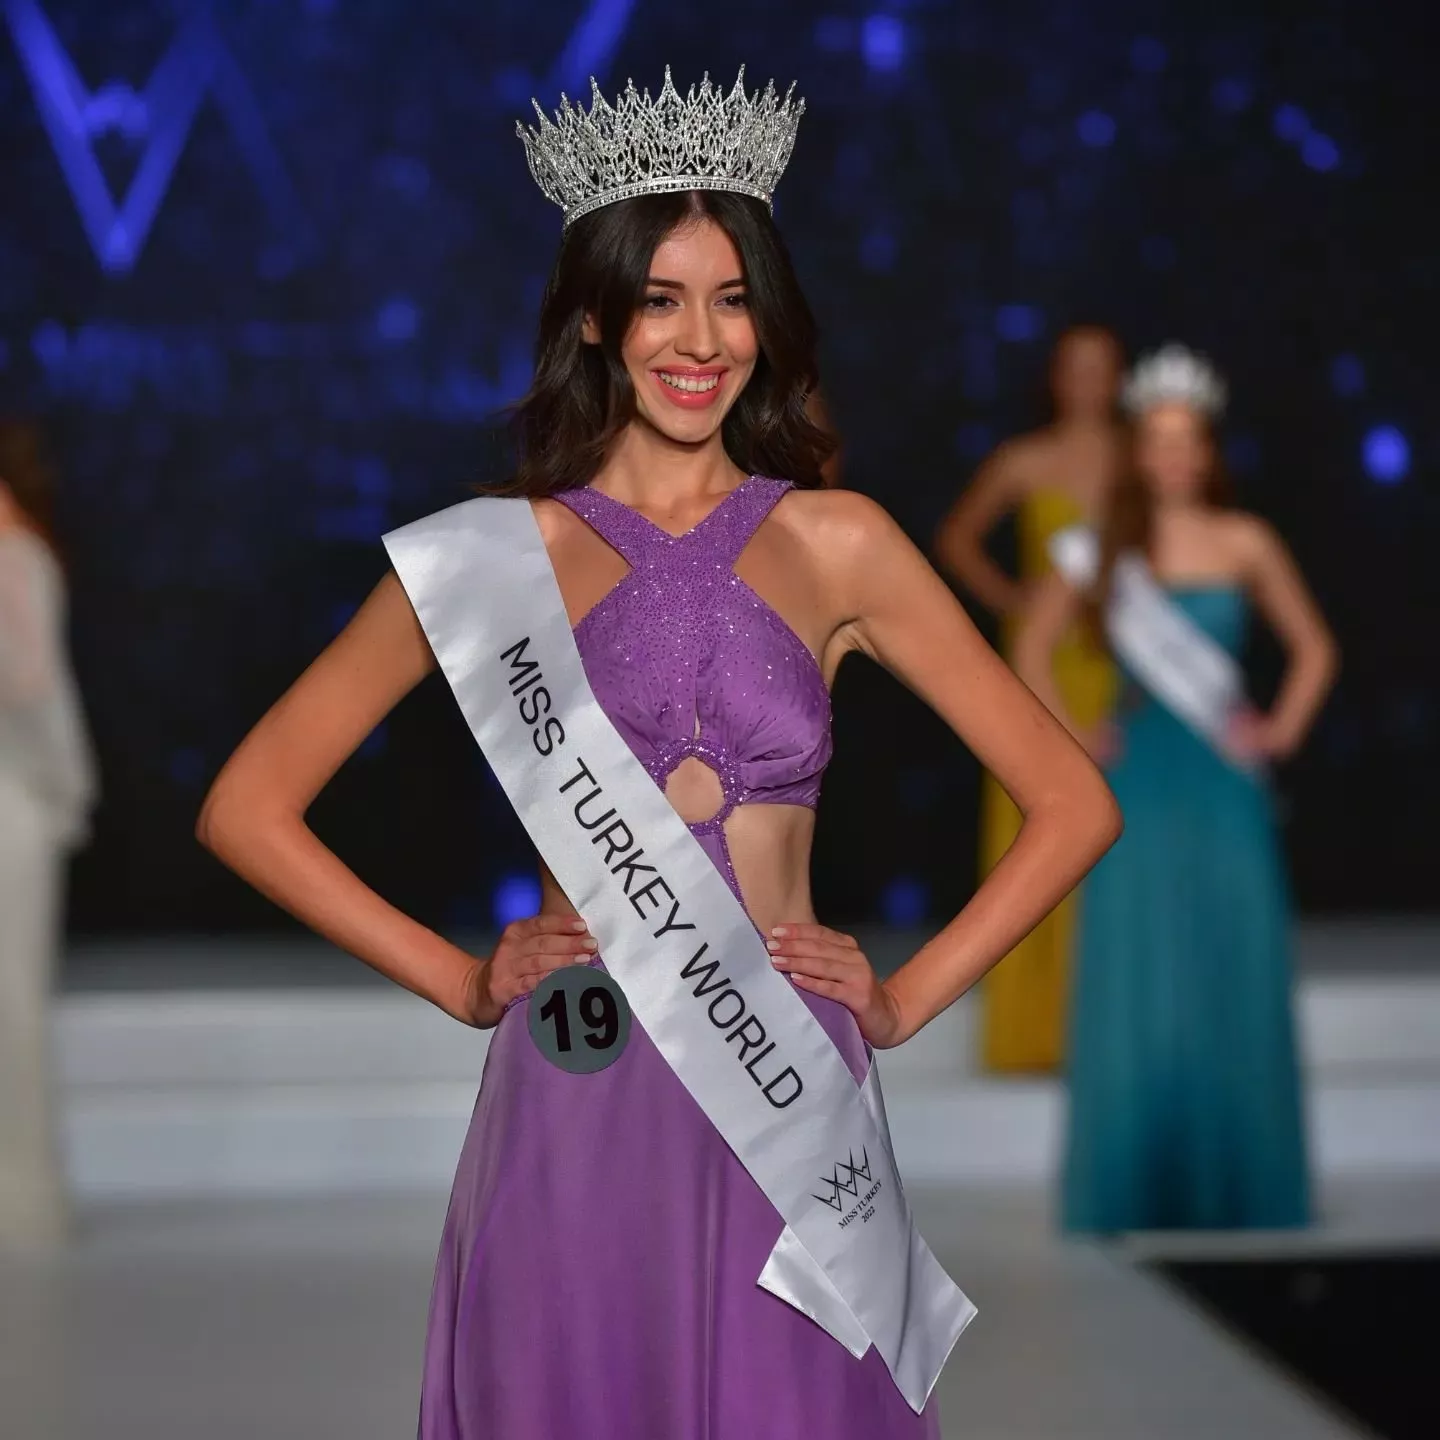 نورسينا ساي ملكة جمال تركيا لعام 2022... وهذا ما نعرفه عنها